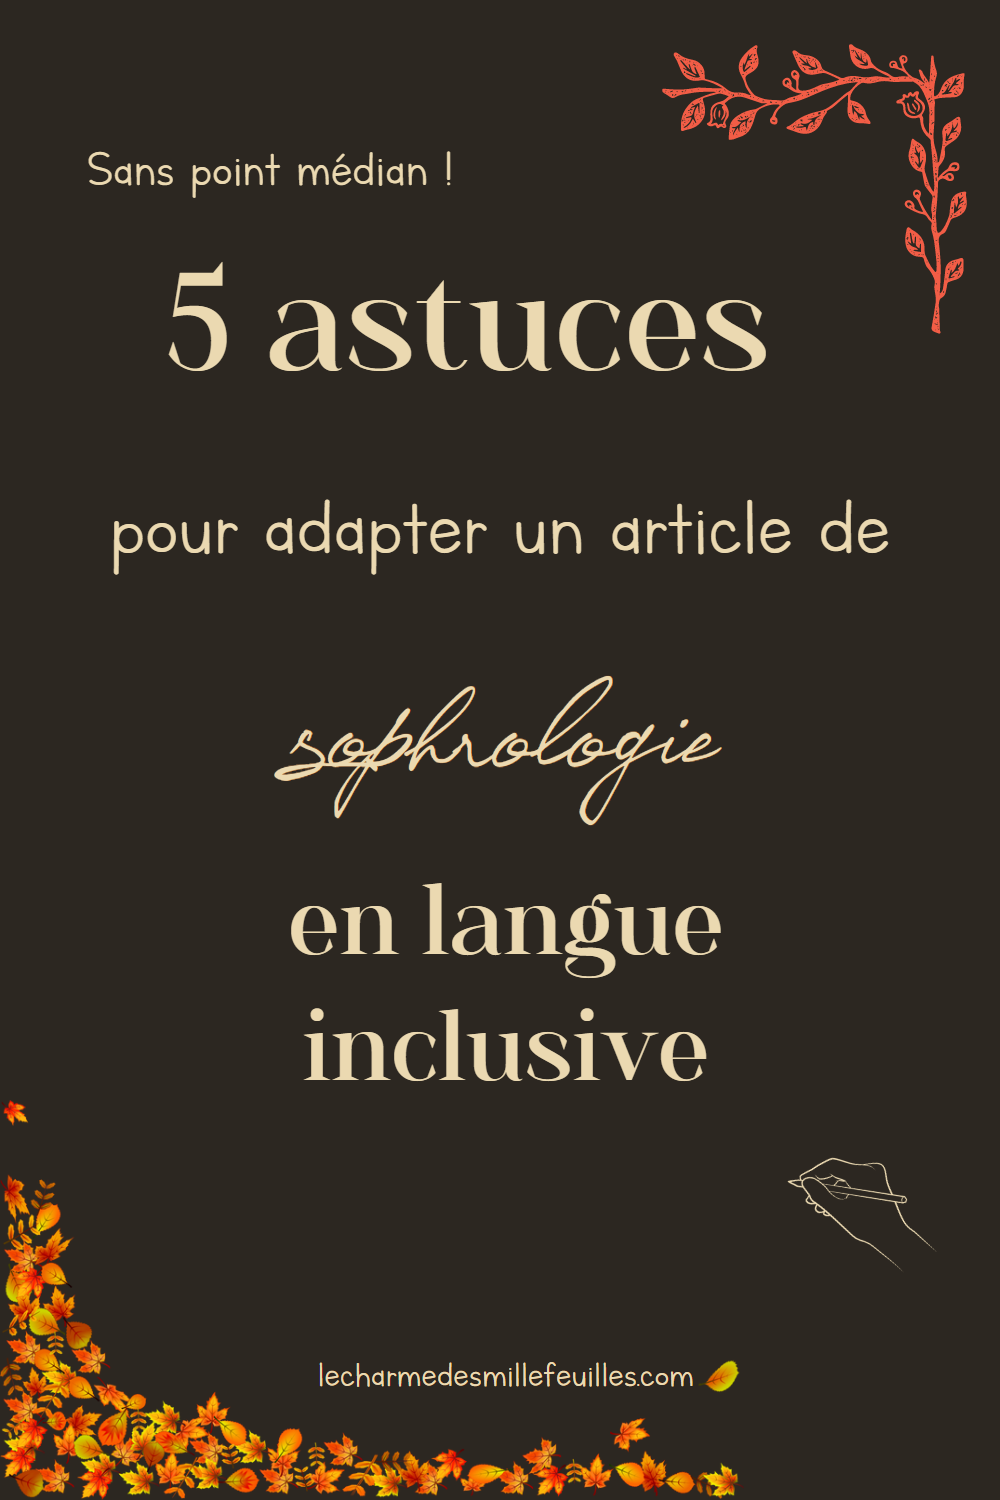 5 astuces pour adapter un article de sophrologie en langue inclusive. Sans point médian !